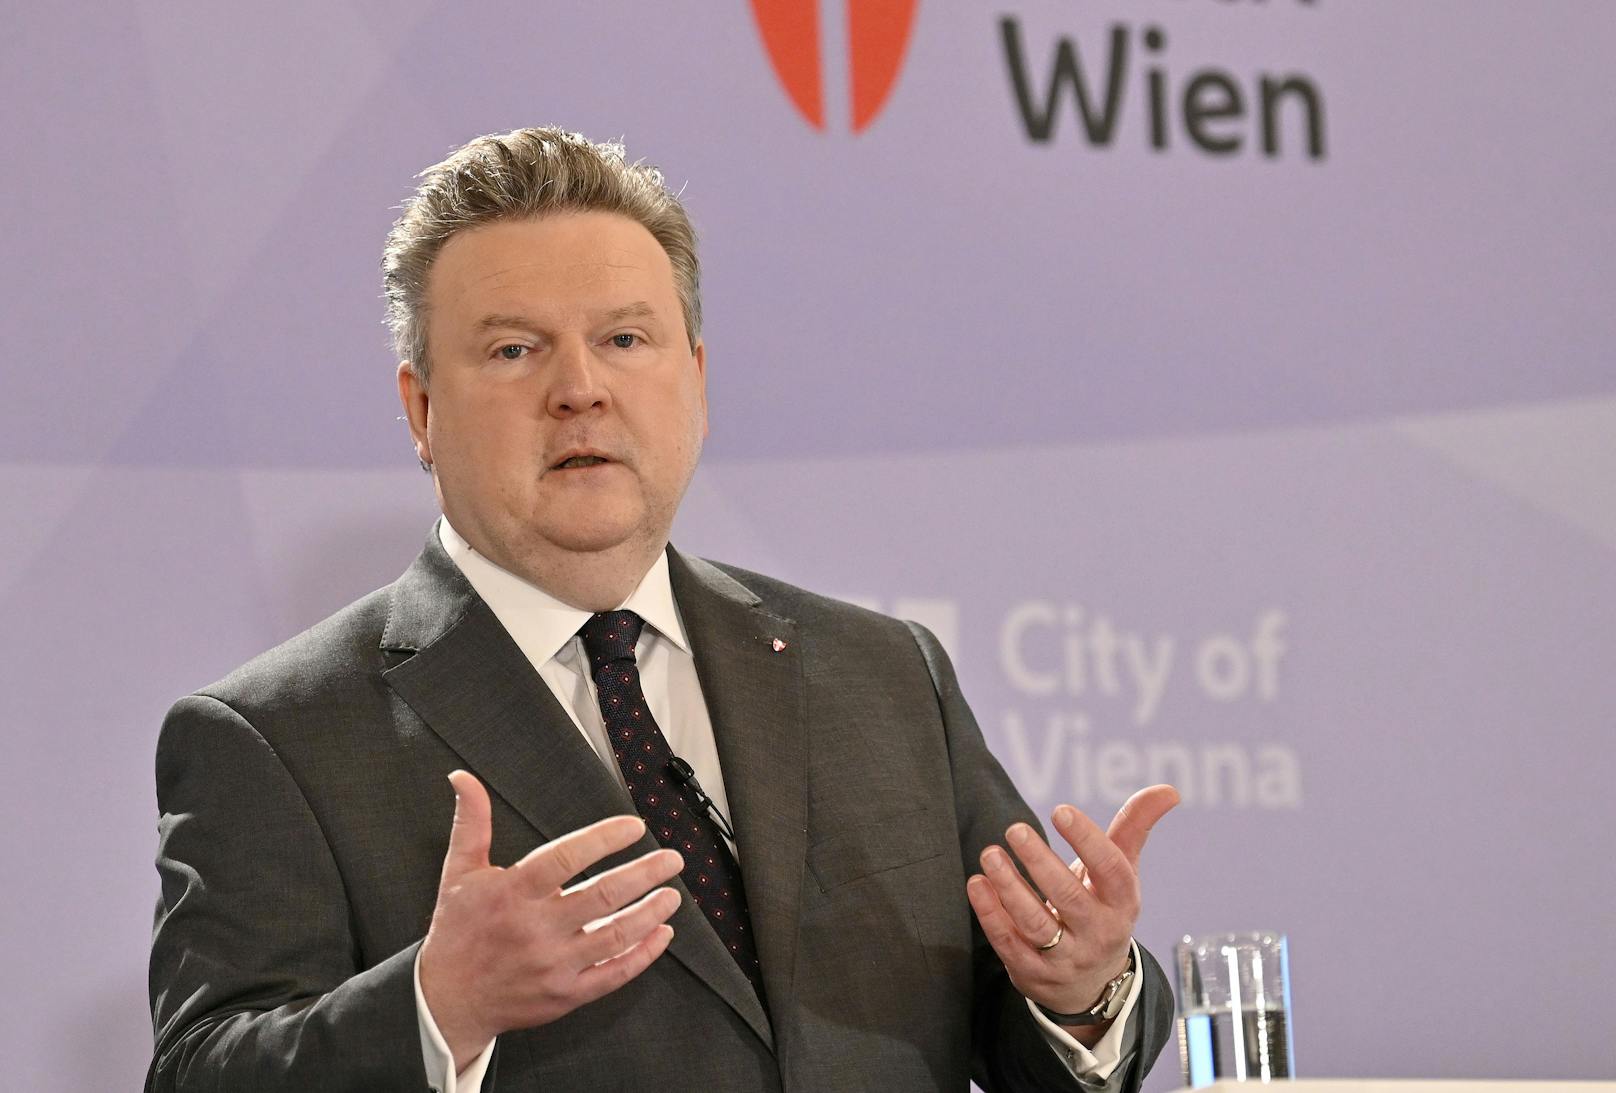 Zwei Drittel der Fragen zum Kiga-Förderskandal an den Wiener Stadtchef wurden bereits im Vorfeld gestrichen.